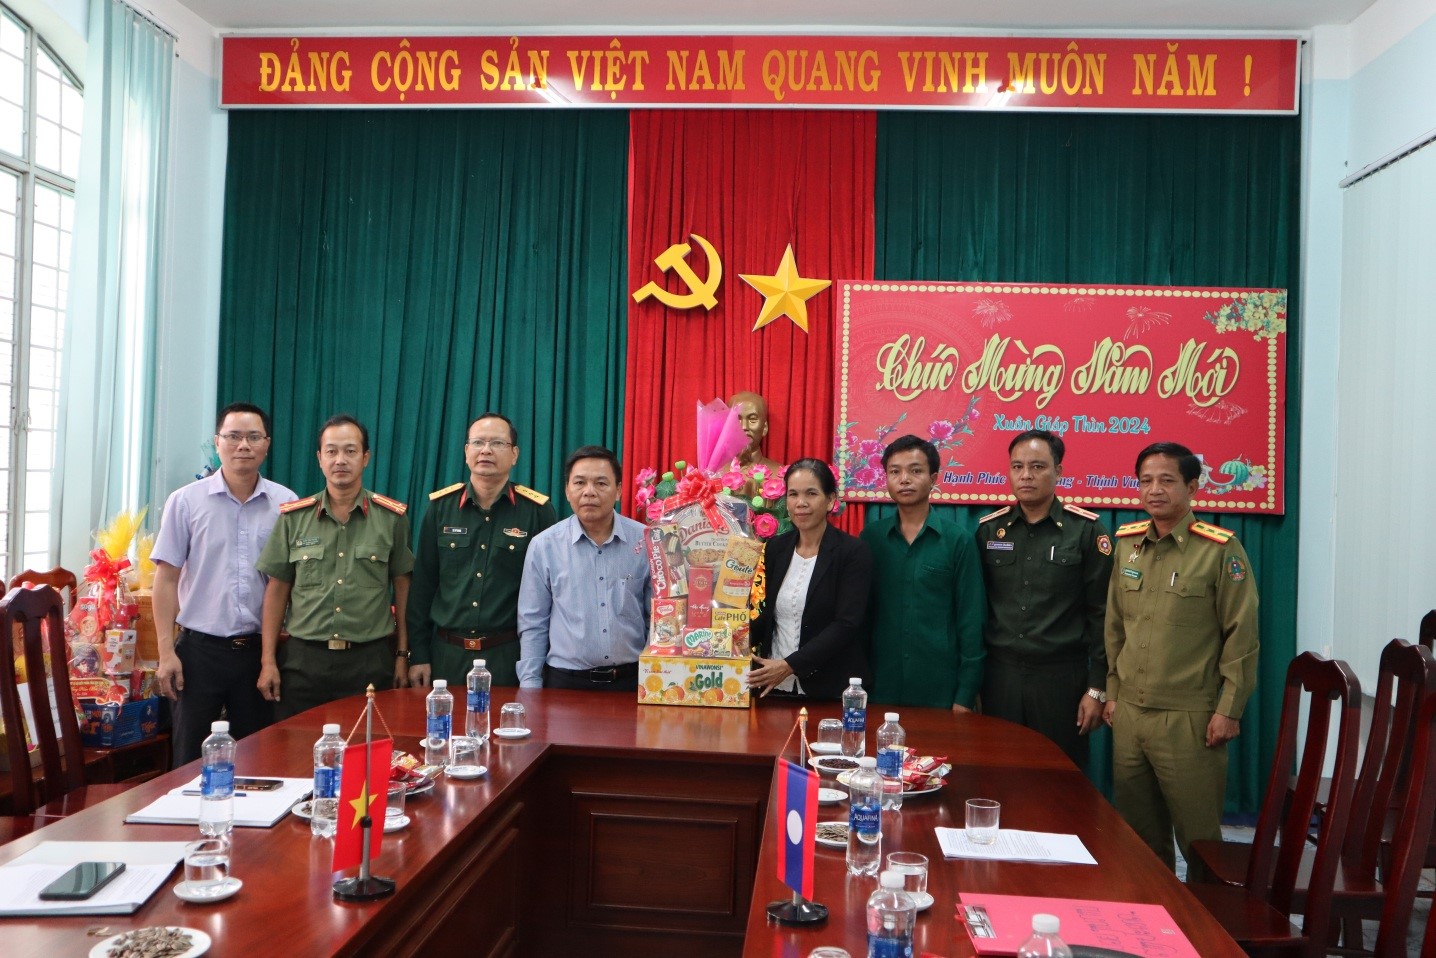 Lãnh đạo huyện Xan Xay, tỉnh Attapư, nước CHCND Lào đến chúc mừng Tết cổ truyền Nguyên đán năm 2024 tại huyện Đăk Glei